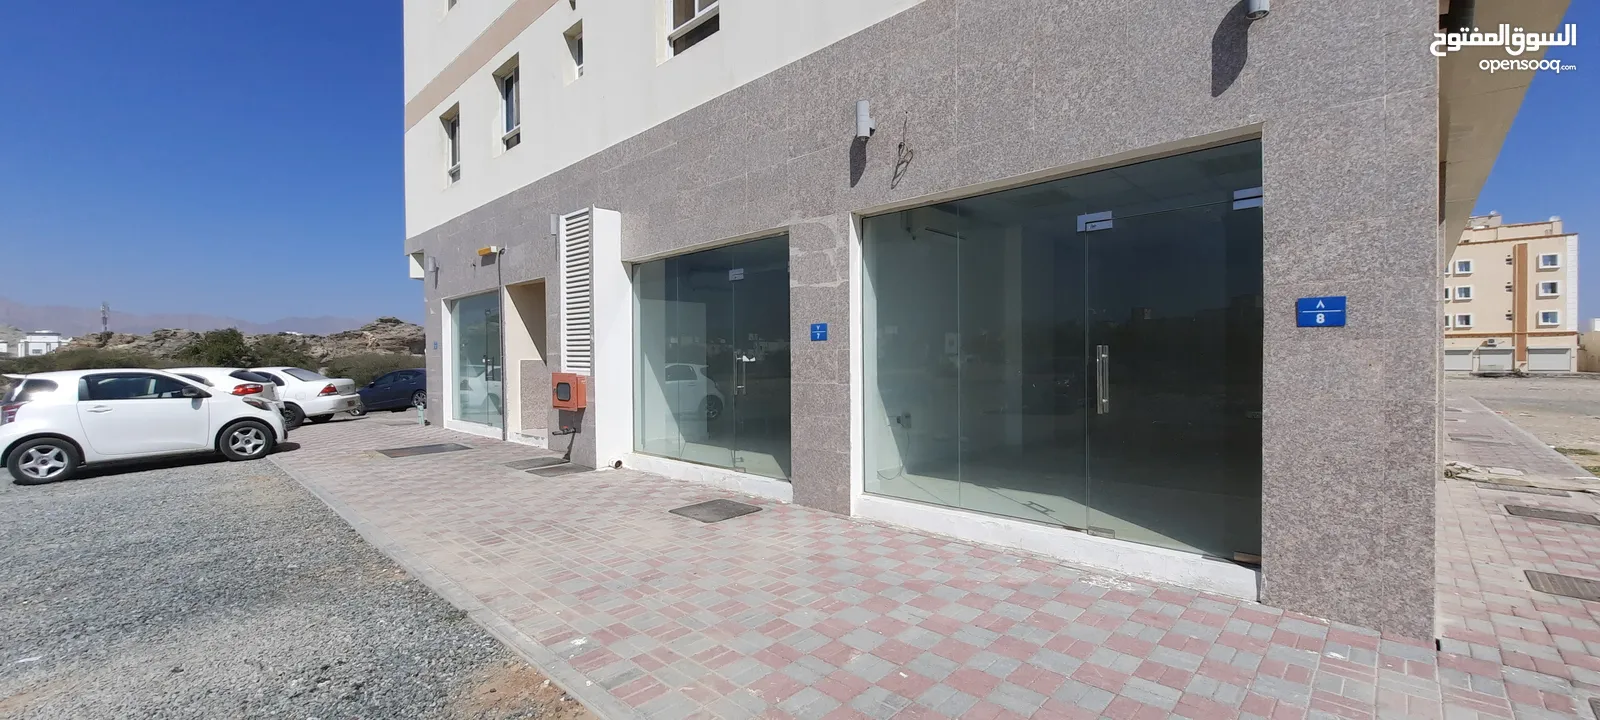 29-49 sqm shops for rent - Al Amarat 6